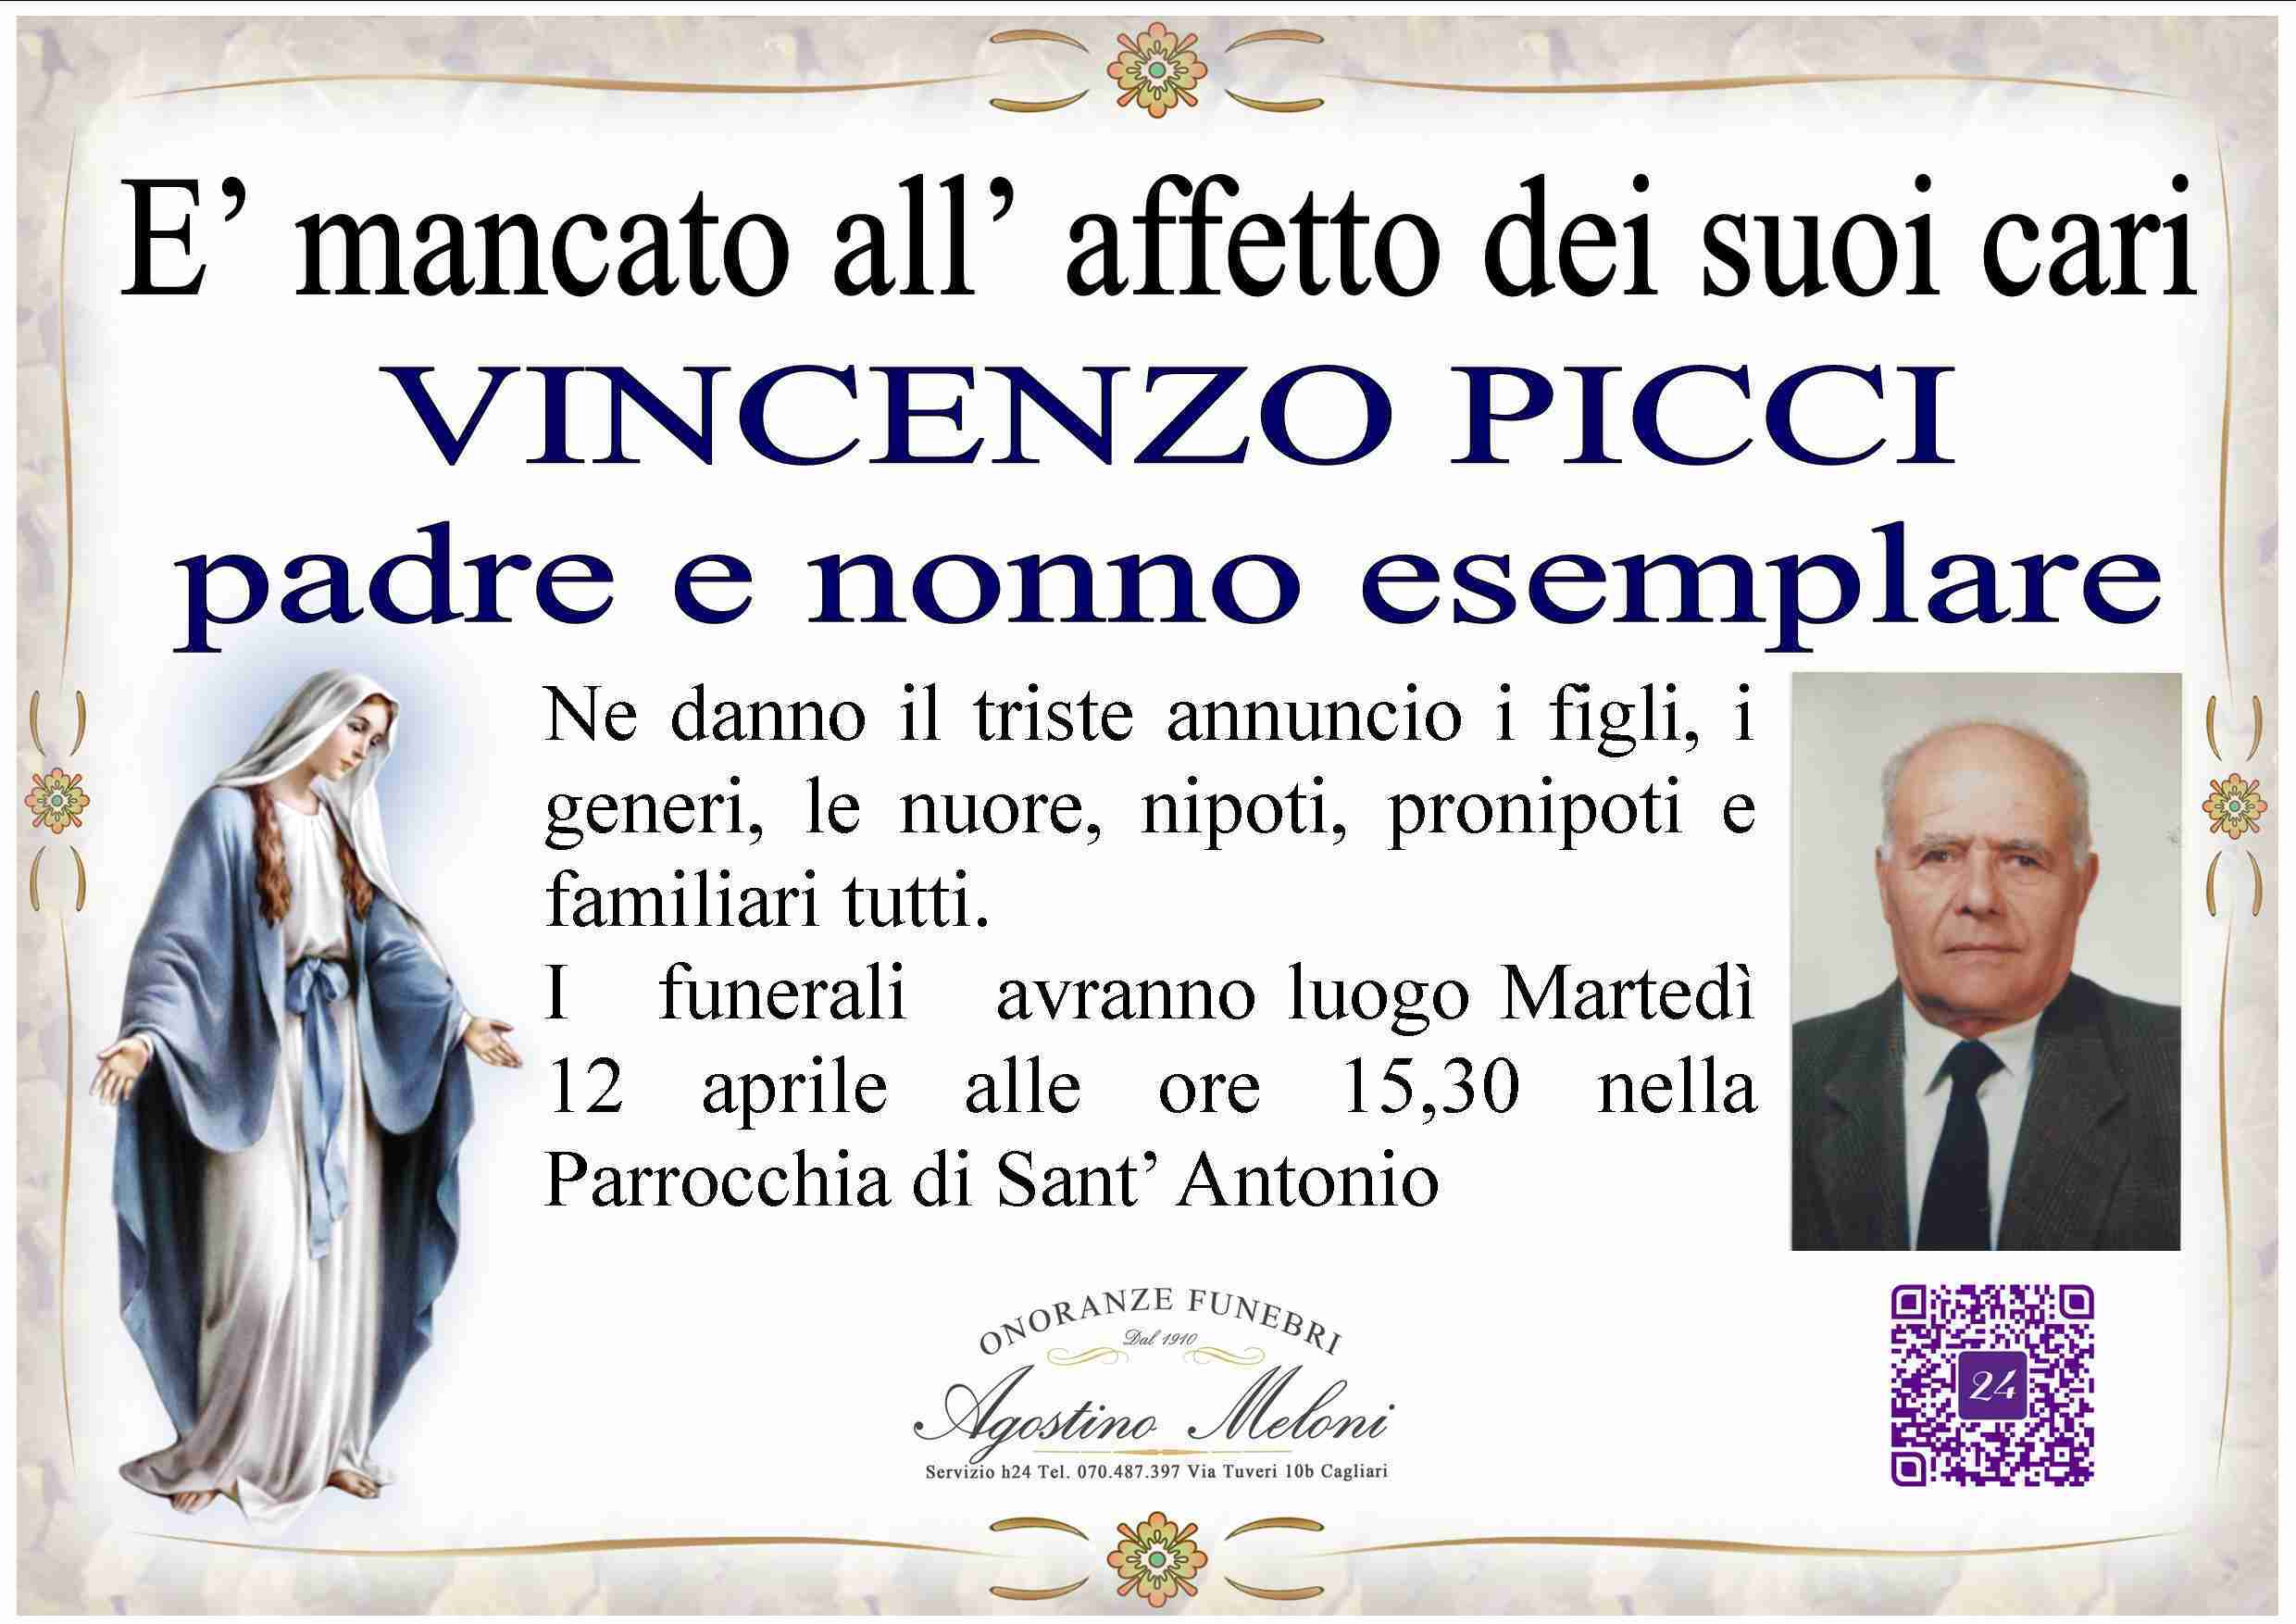 Vincenzo Picci